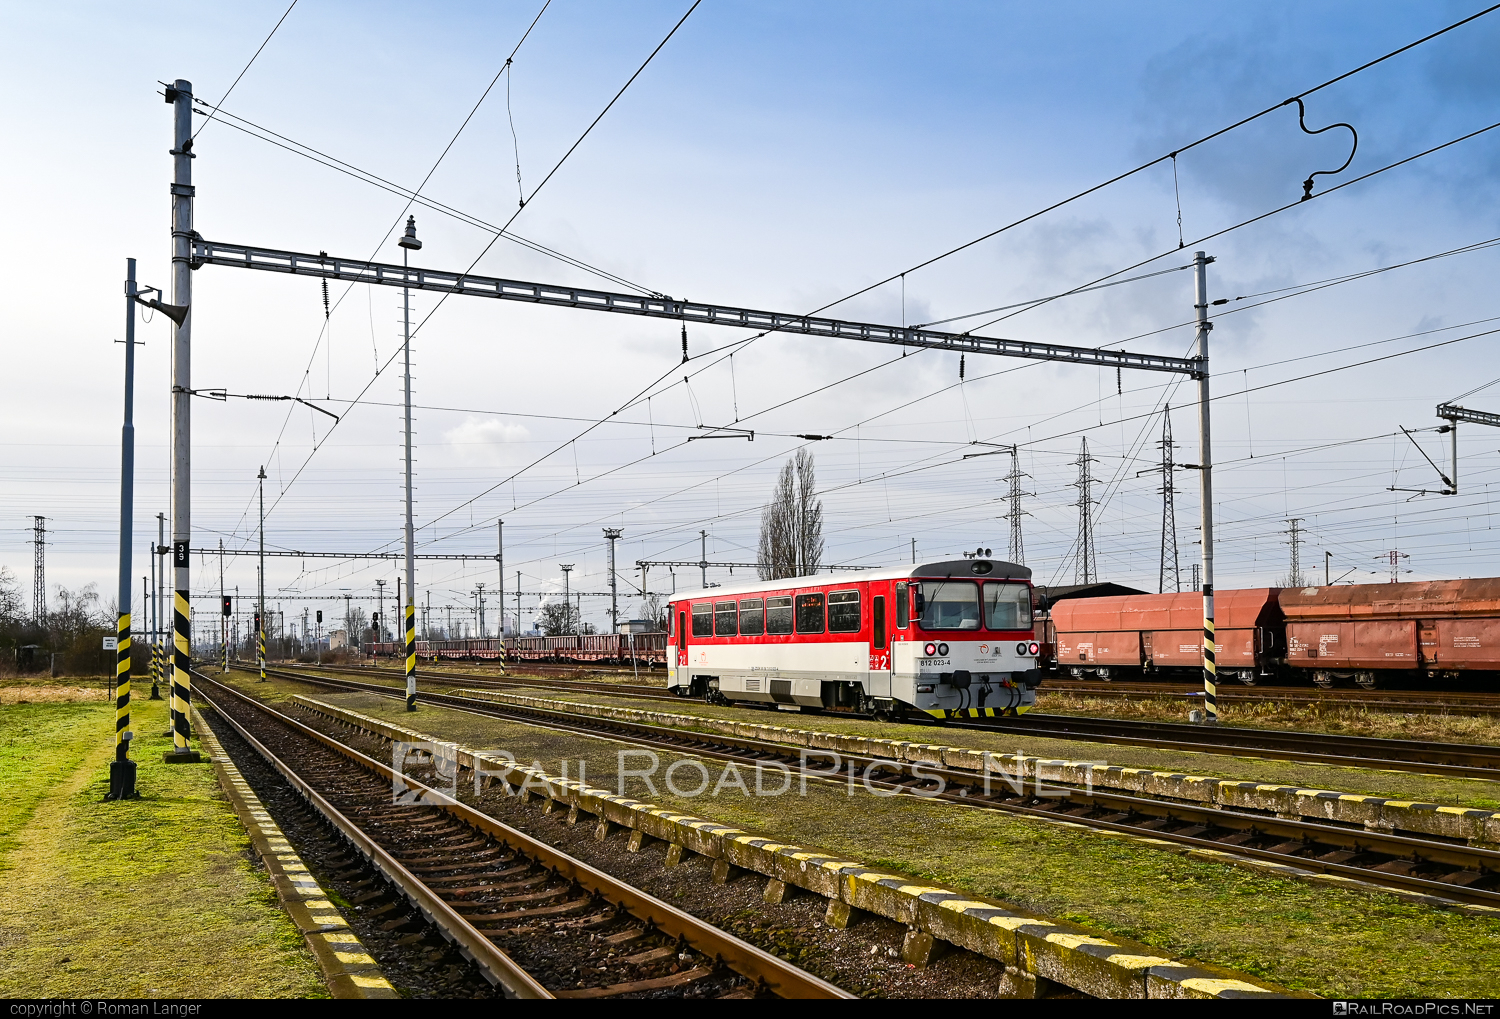 ŽOS Zvolen Class 812 - 812 023-4 operated by Železničná Spoločnost' Slovensko, a.s. #ZeleznicnaSpolocnostSlovensko #zoszvolen #zoszvolen812 #zssk